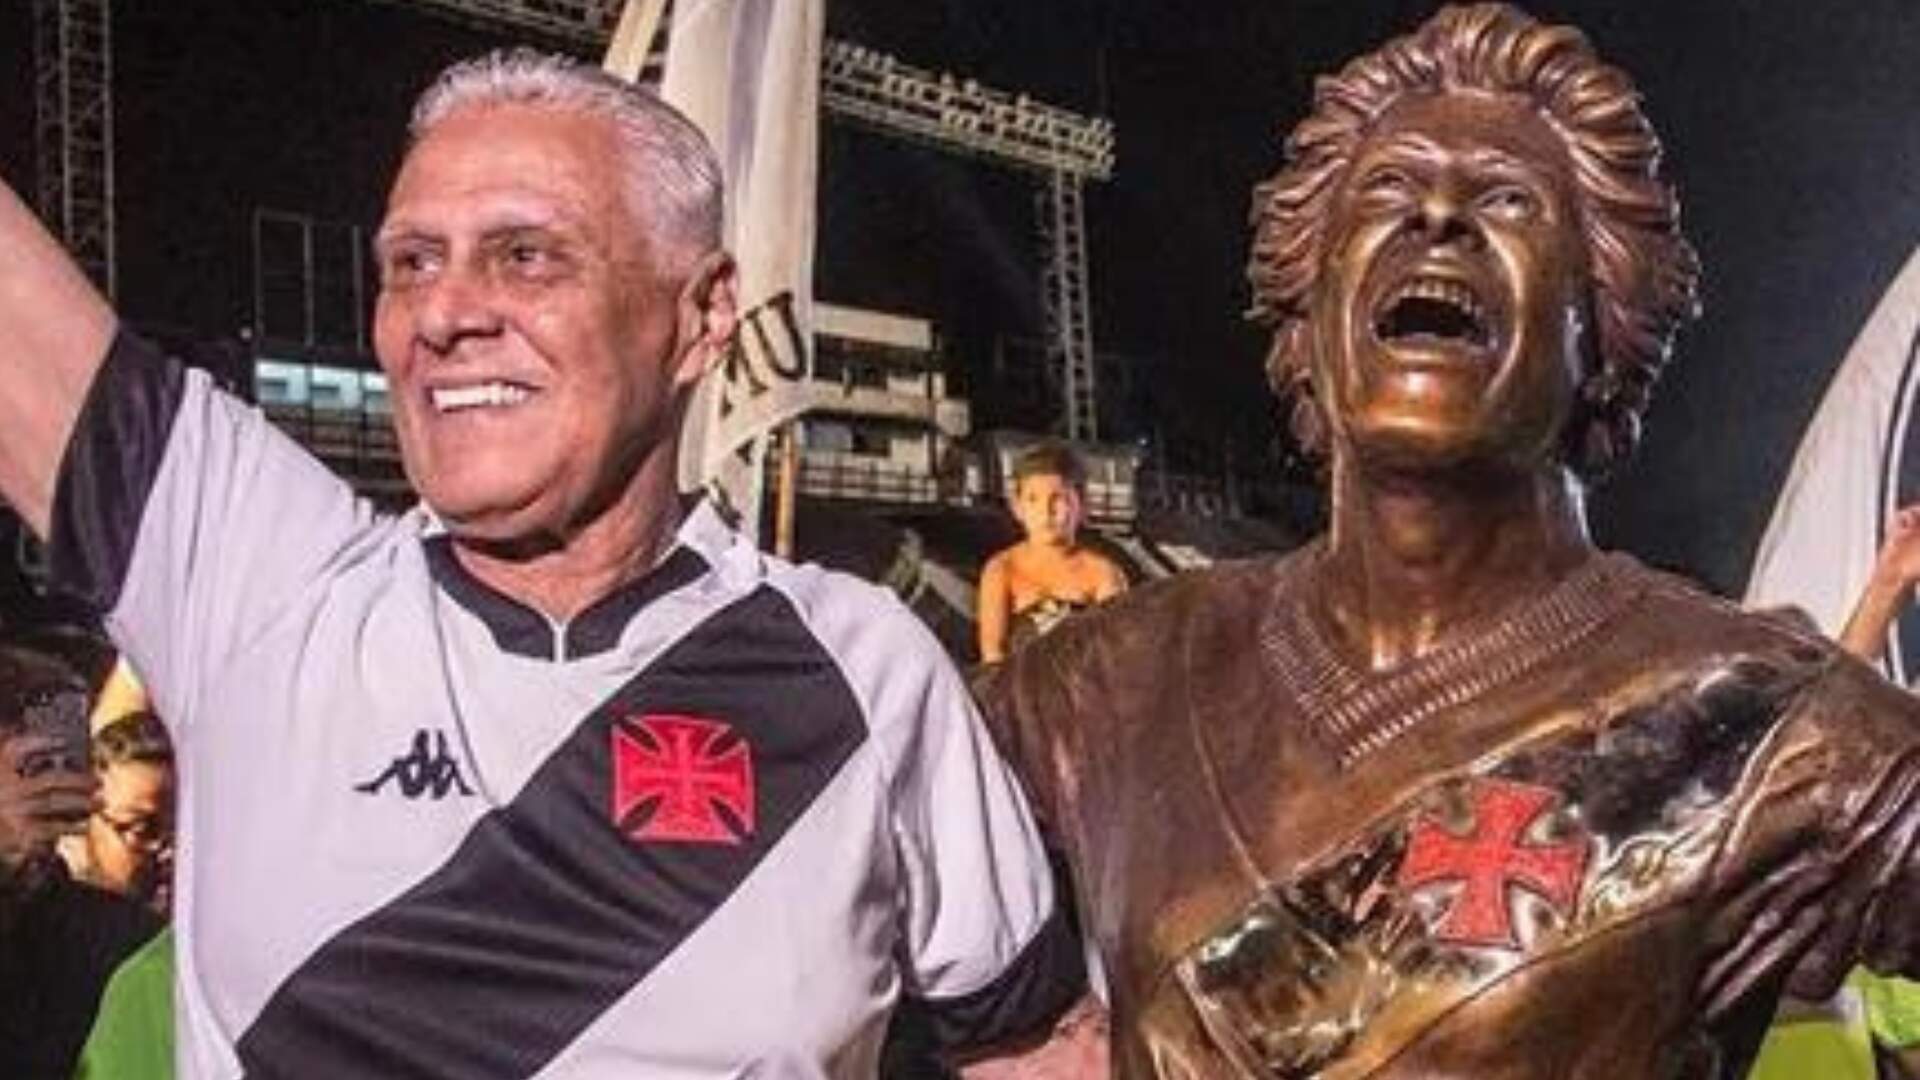 Morre Roberto Dinamite, ex-jogador do Vasco, aos 68 anos - Metropolitana FM